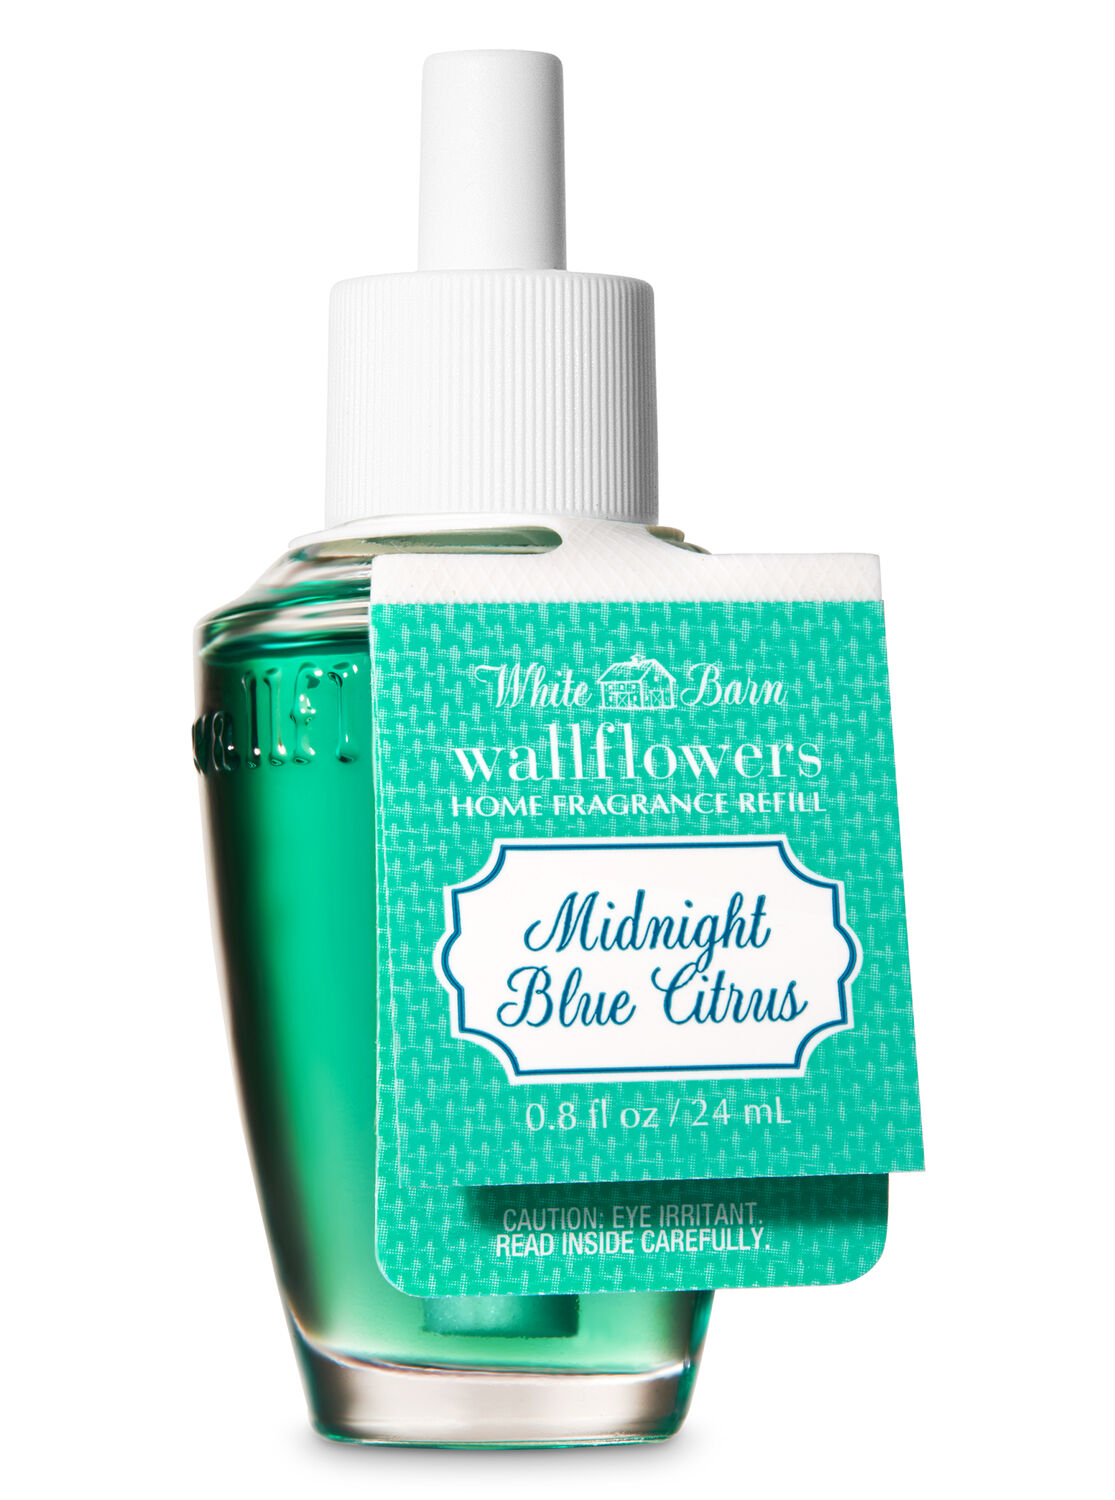 Midnight Blue Citrus Wallflowers Fragrance Refill - White Barn